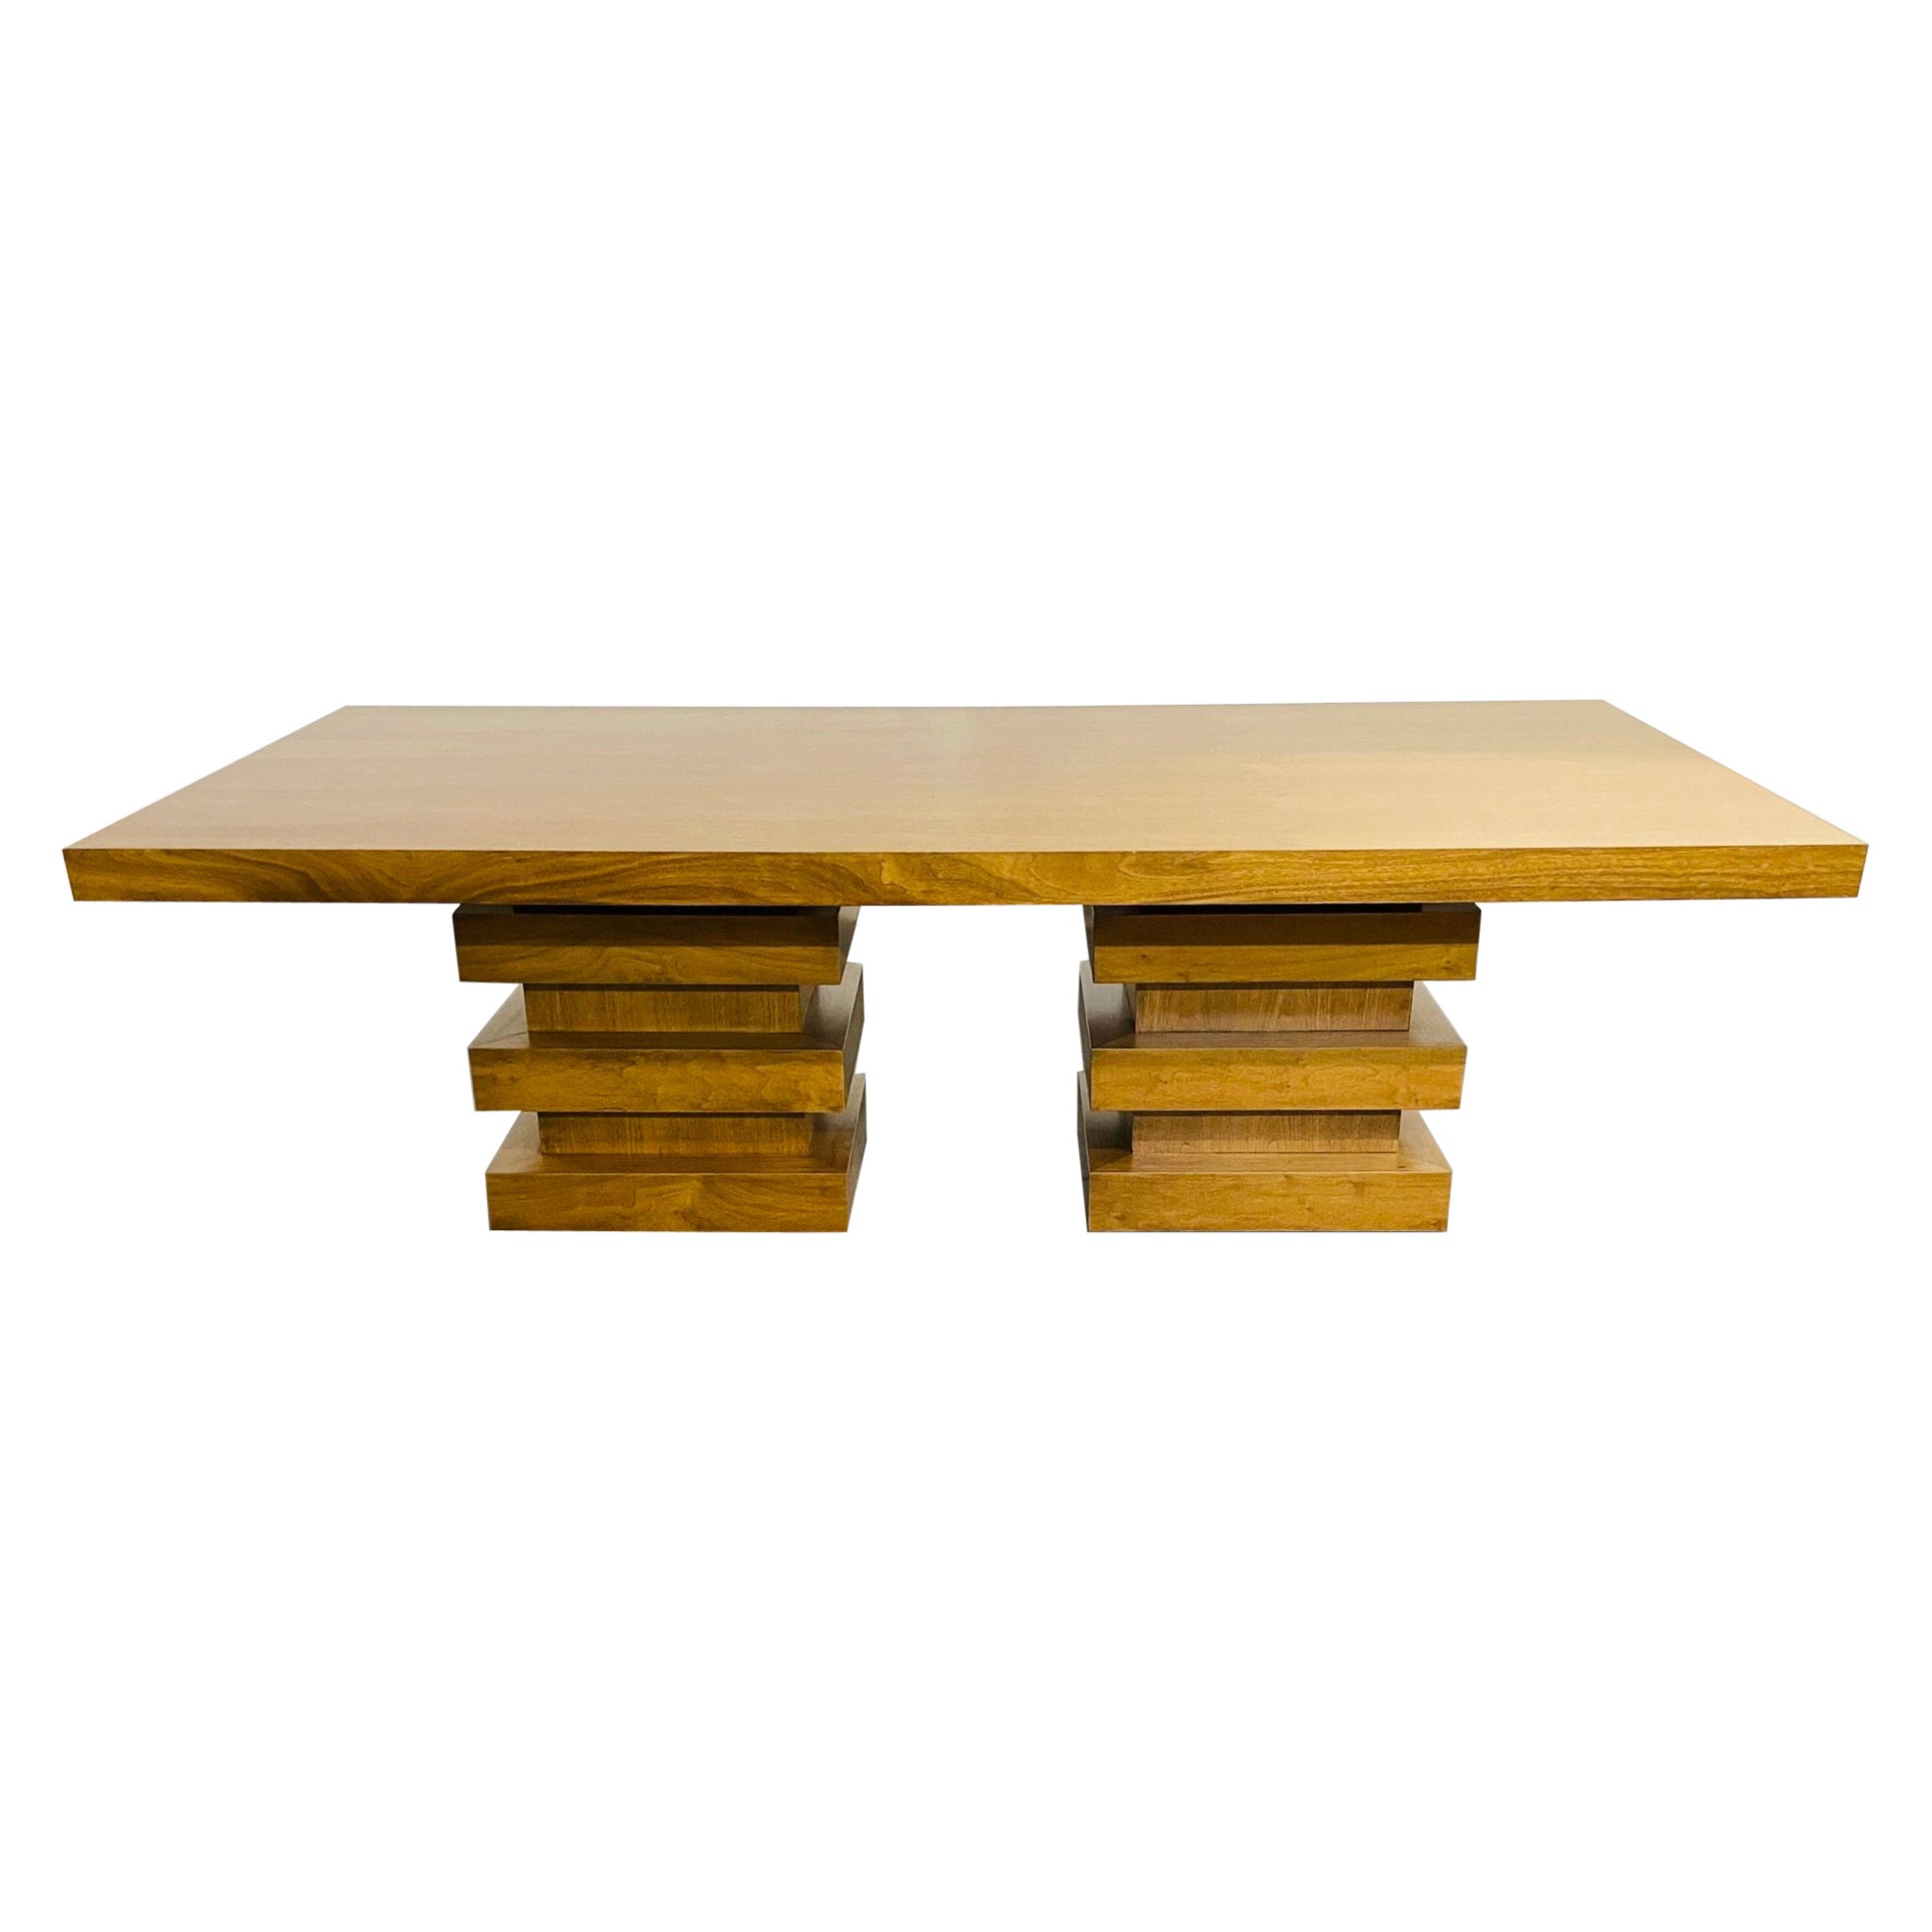 Moderner Ess-/Konferenztisch aus Eichenholz mit doppeltem Sockel, geometrisches Design